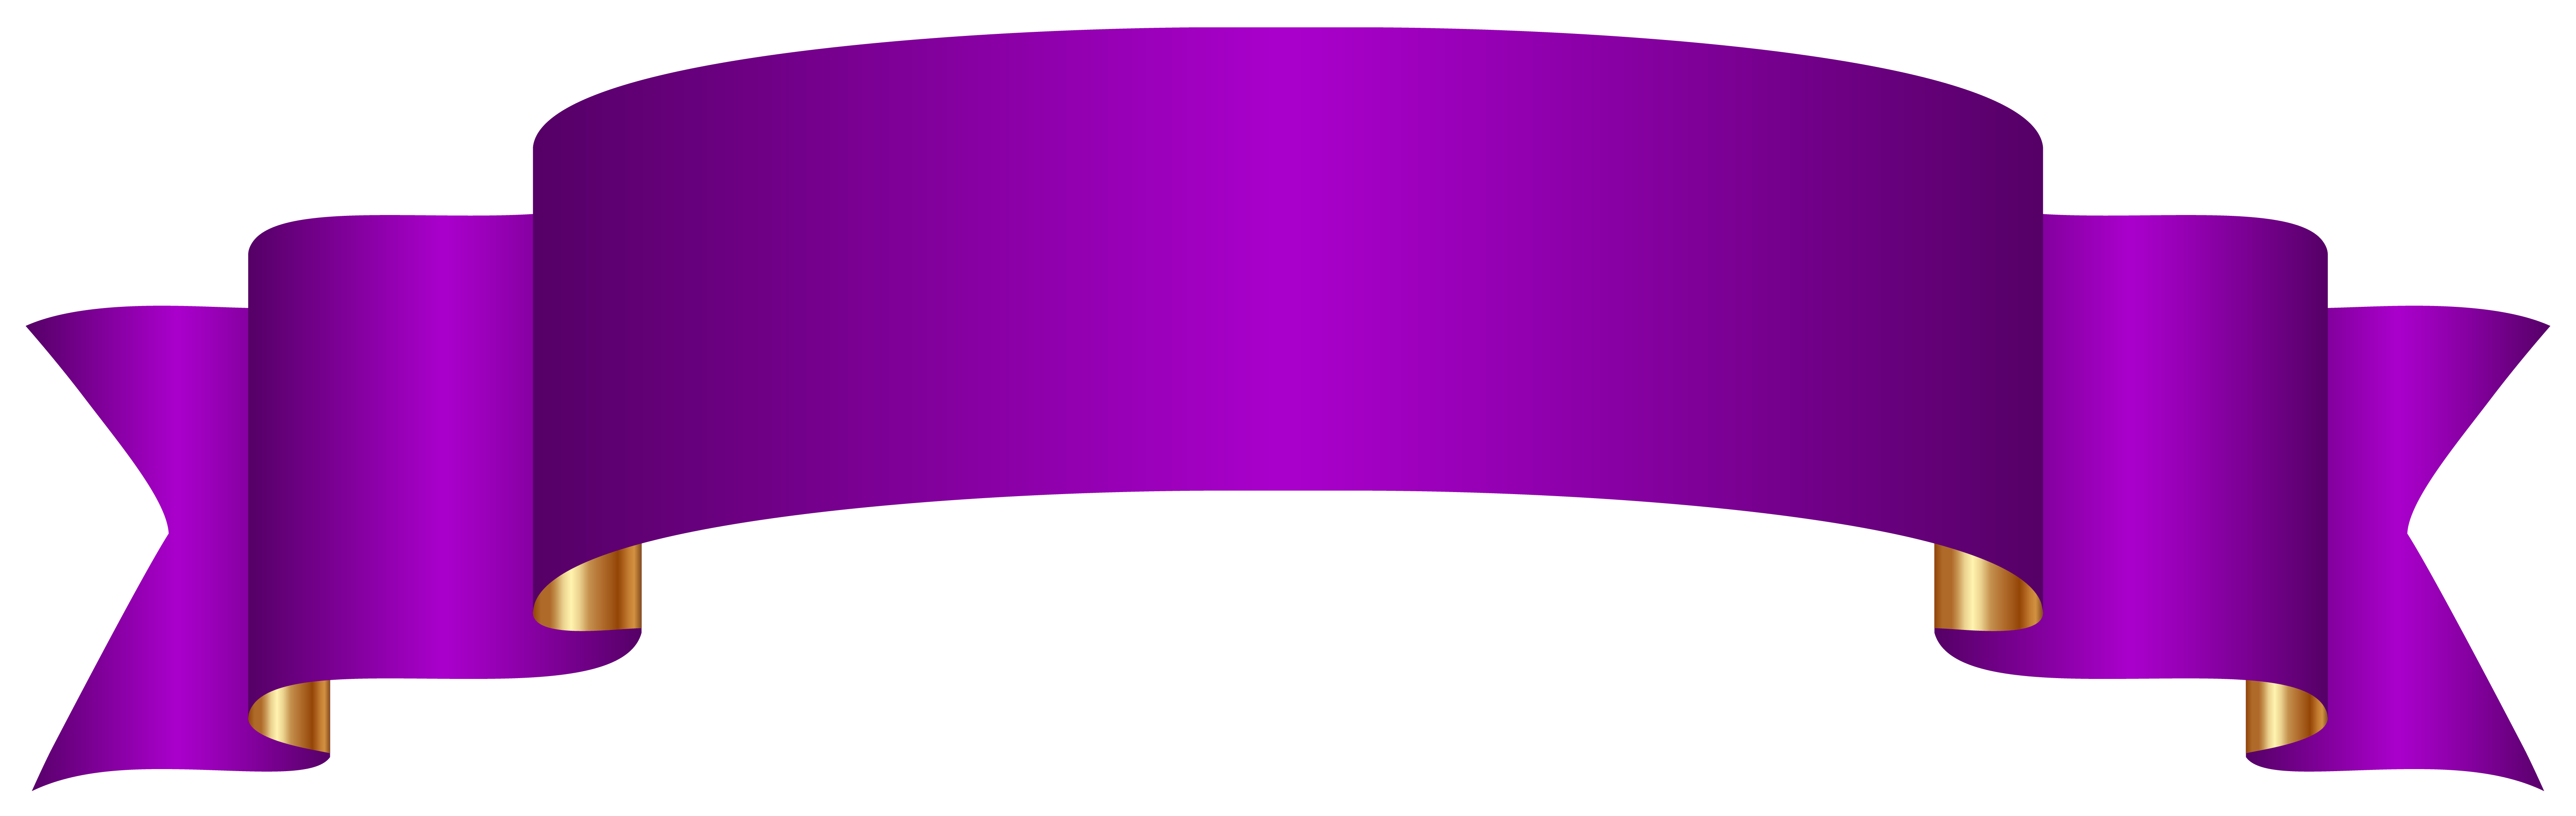 Clipart shapes flag. Banner purple ideal vistalist